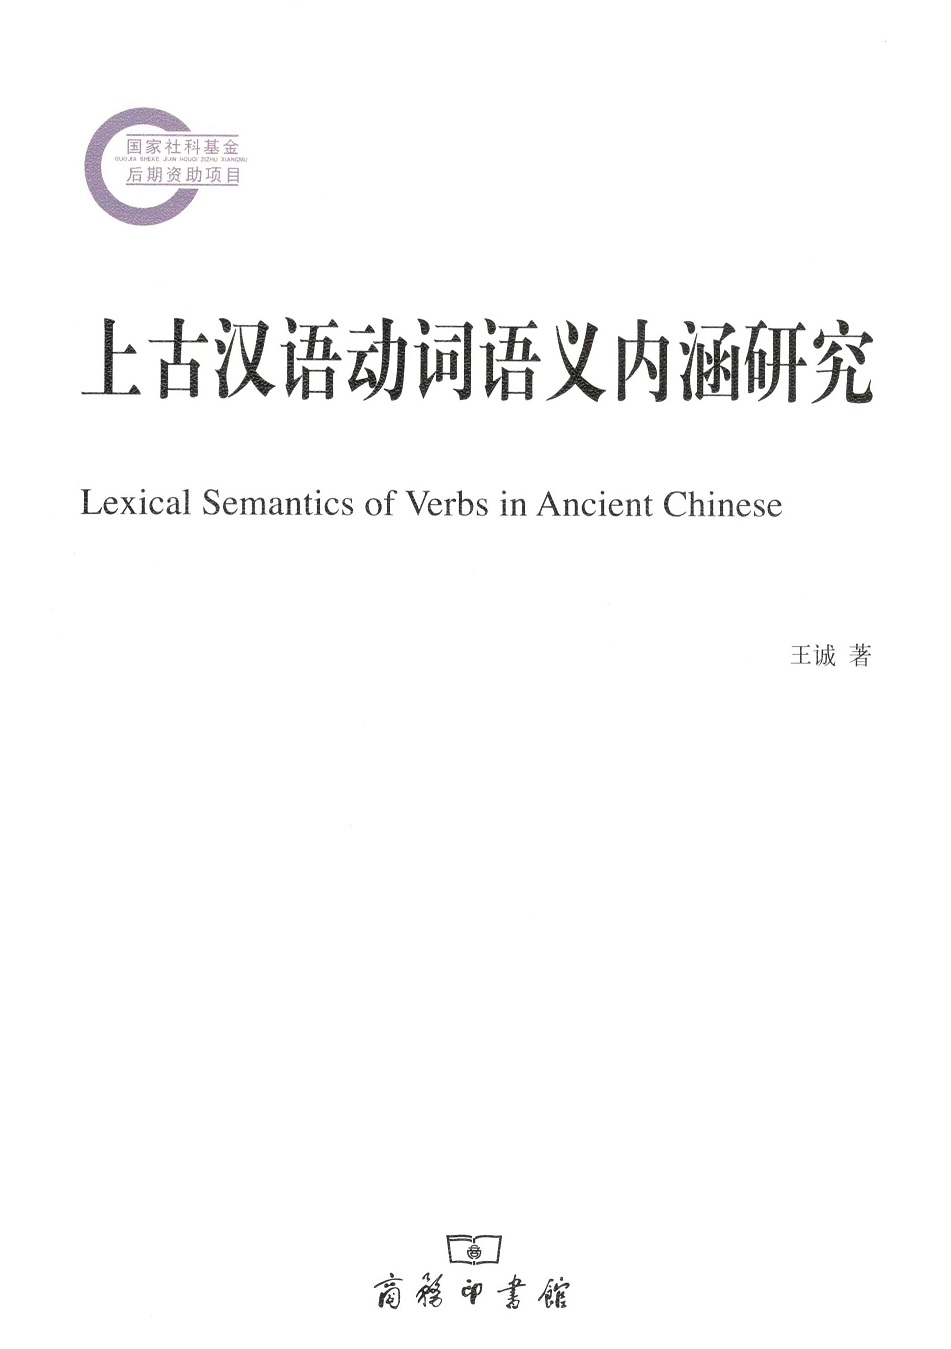 上古汉语动词语义内涵研究 王诚 商务印书馆